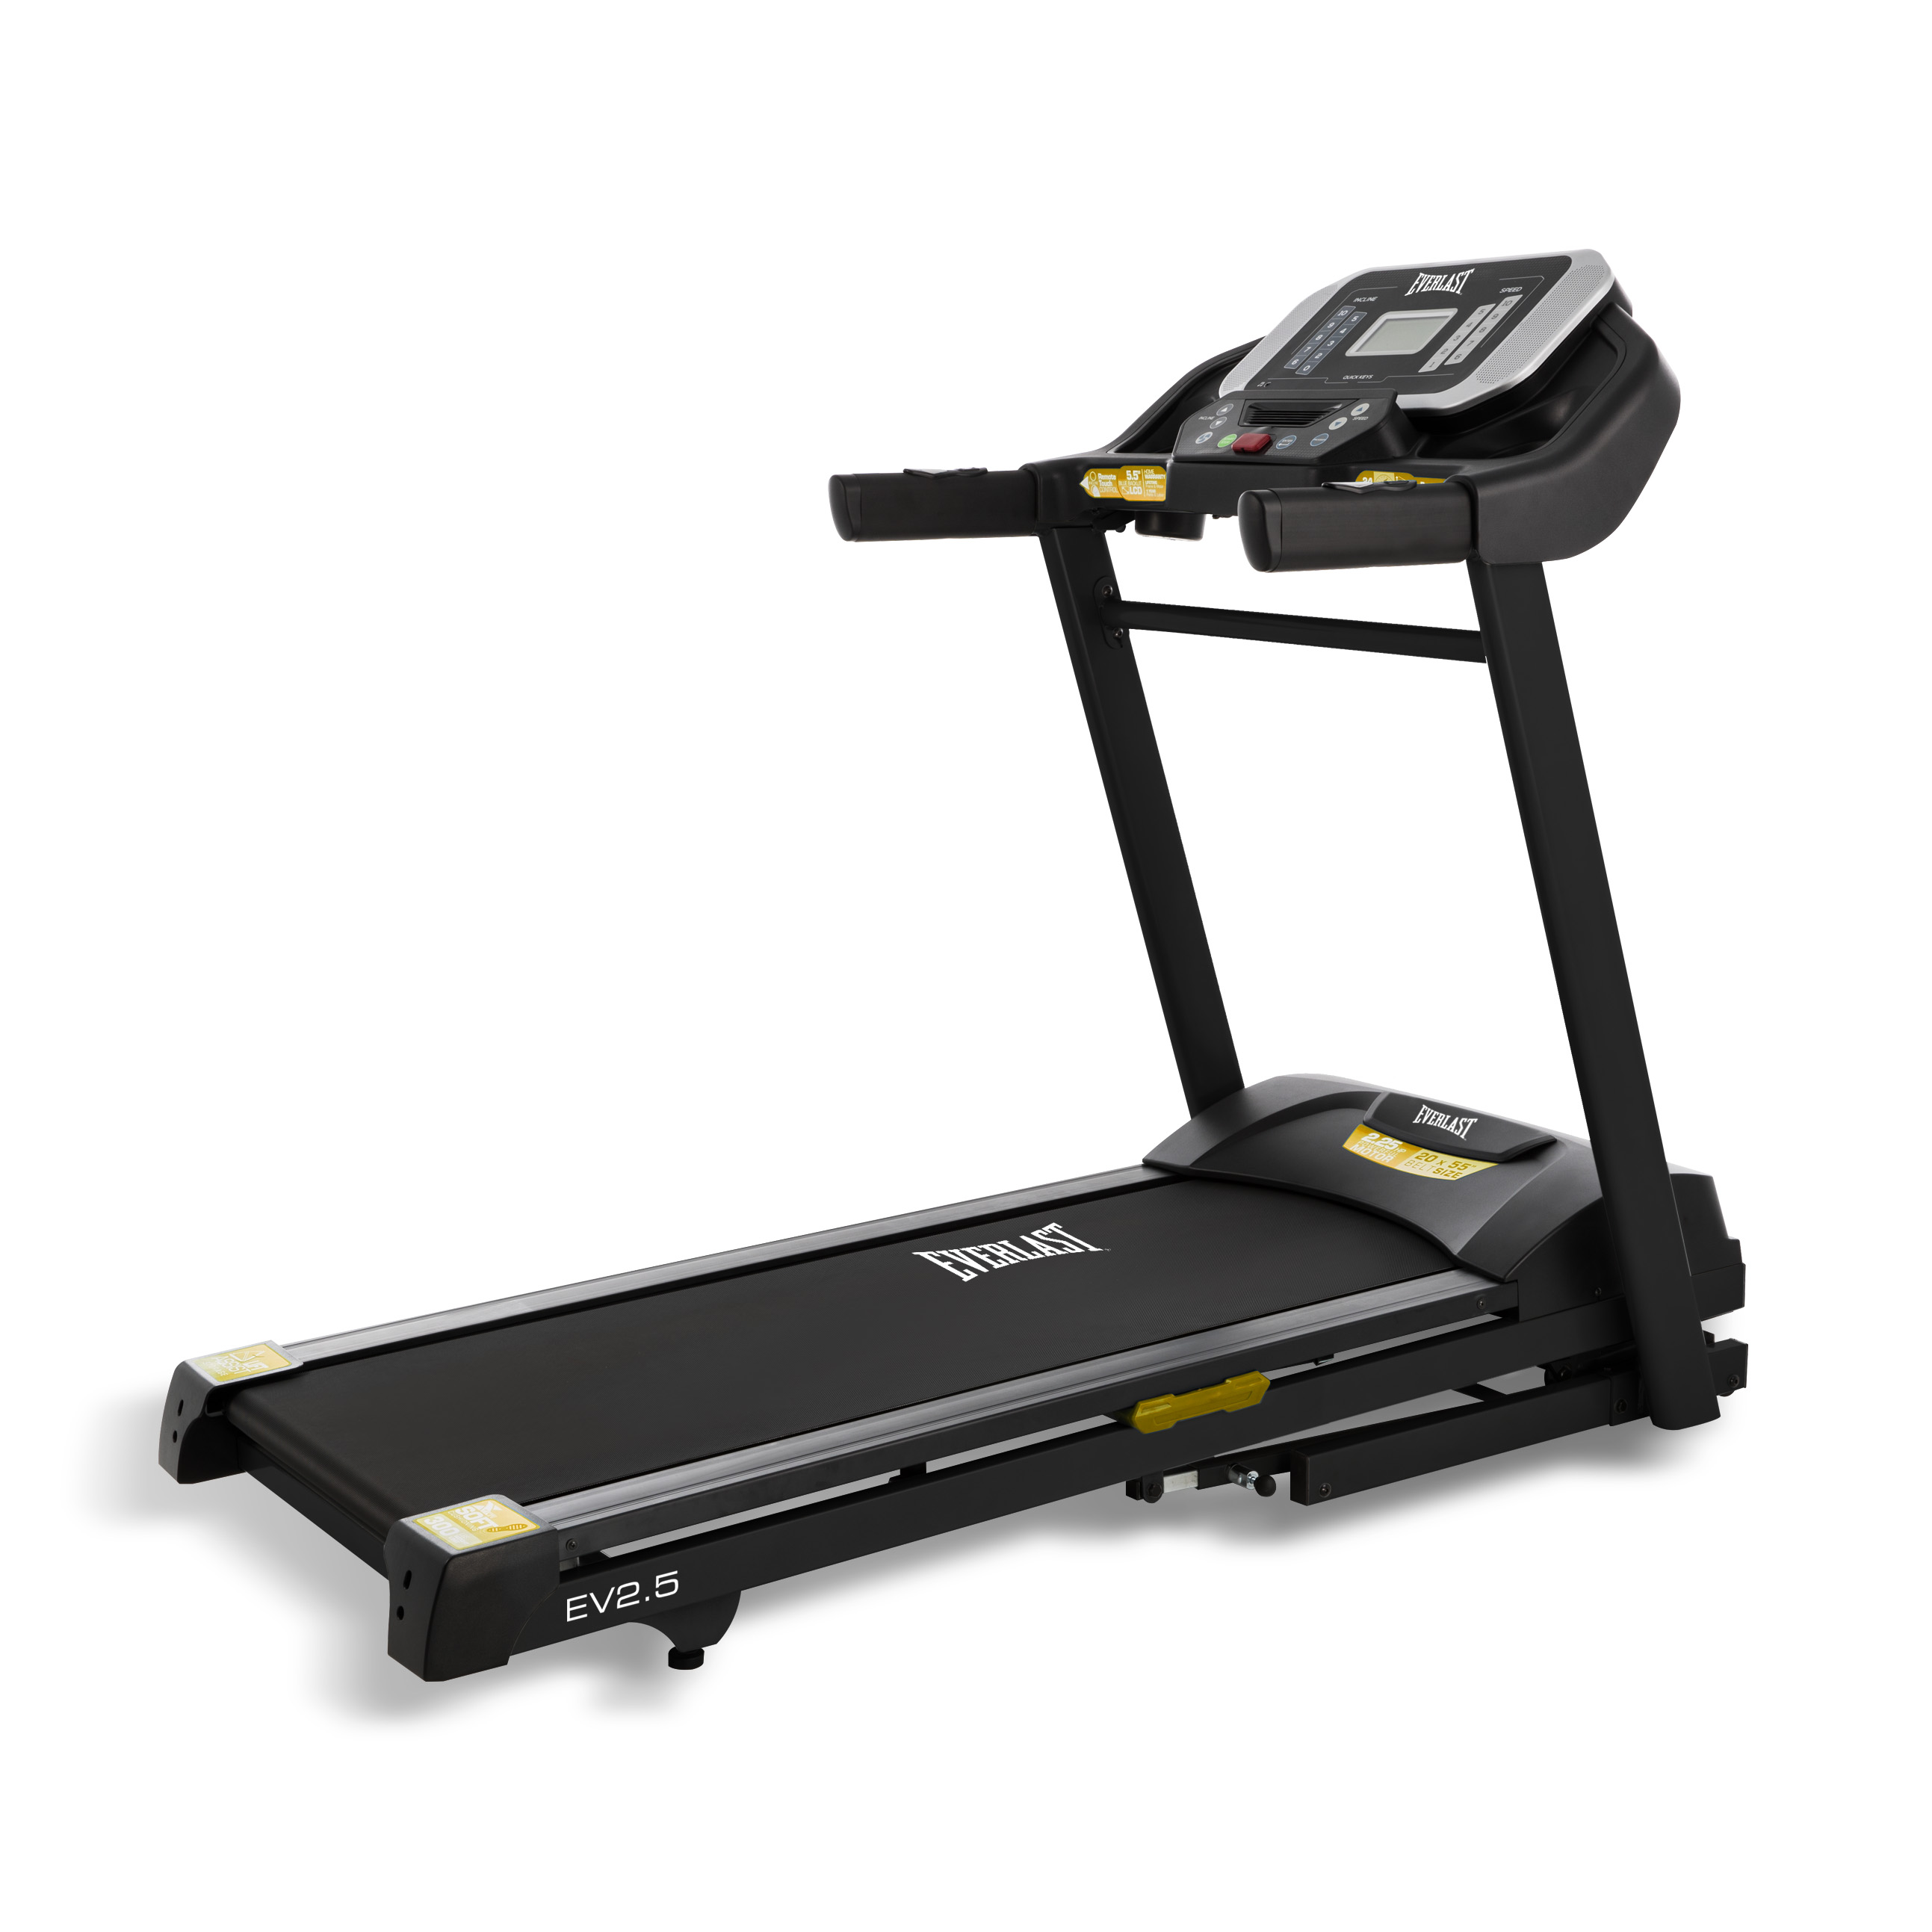 EV2.5 Treadmill